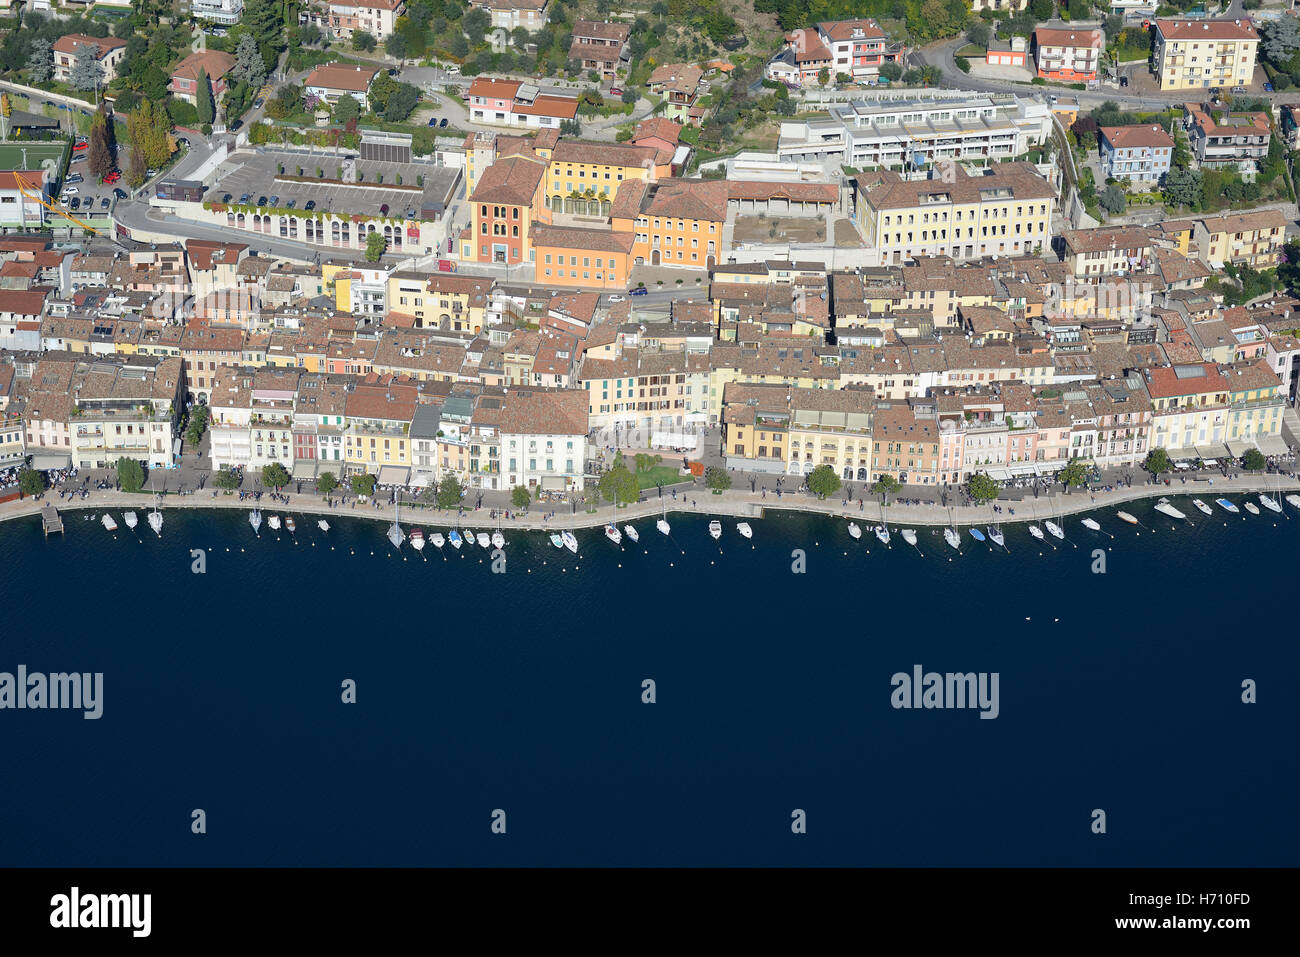 LUFTAUFNAHME. Malerische Stadt mit einer Reihe von Booten am Gardasee. Salò, Provinz Brescia, Lombardei, Italien. Stockfoto